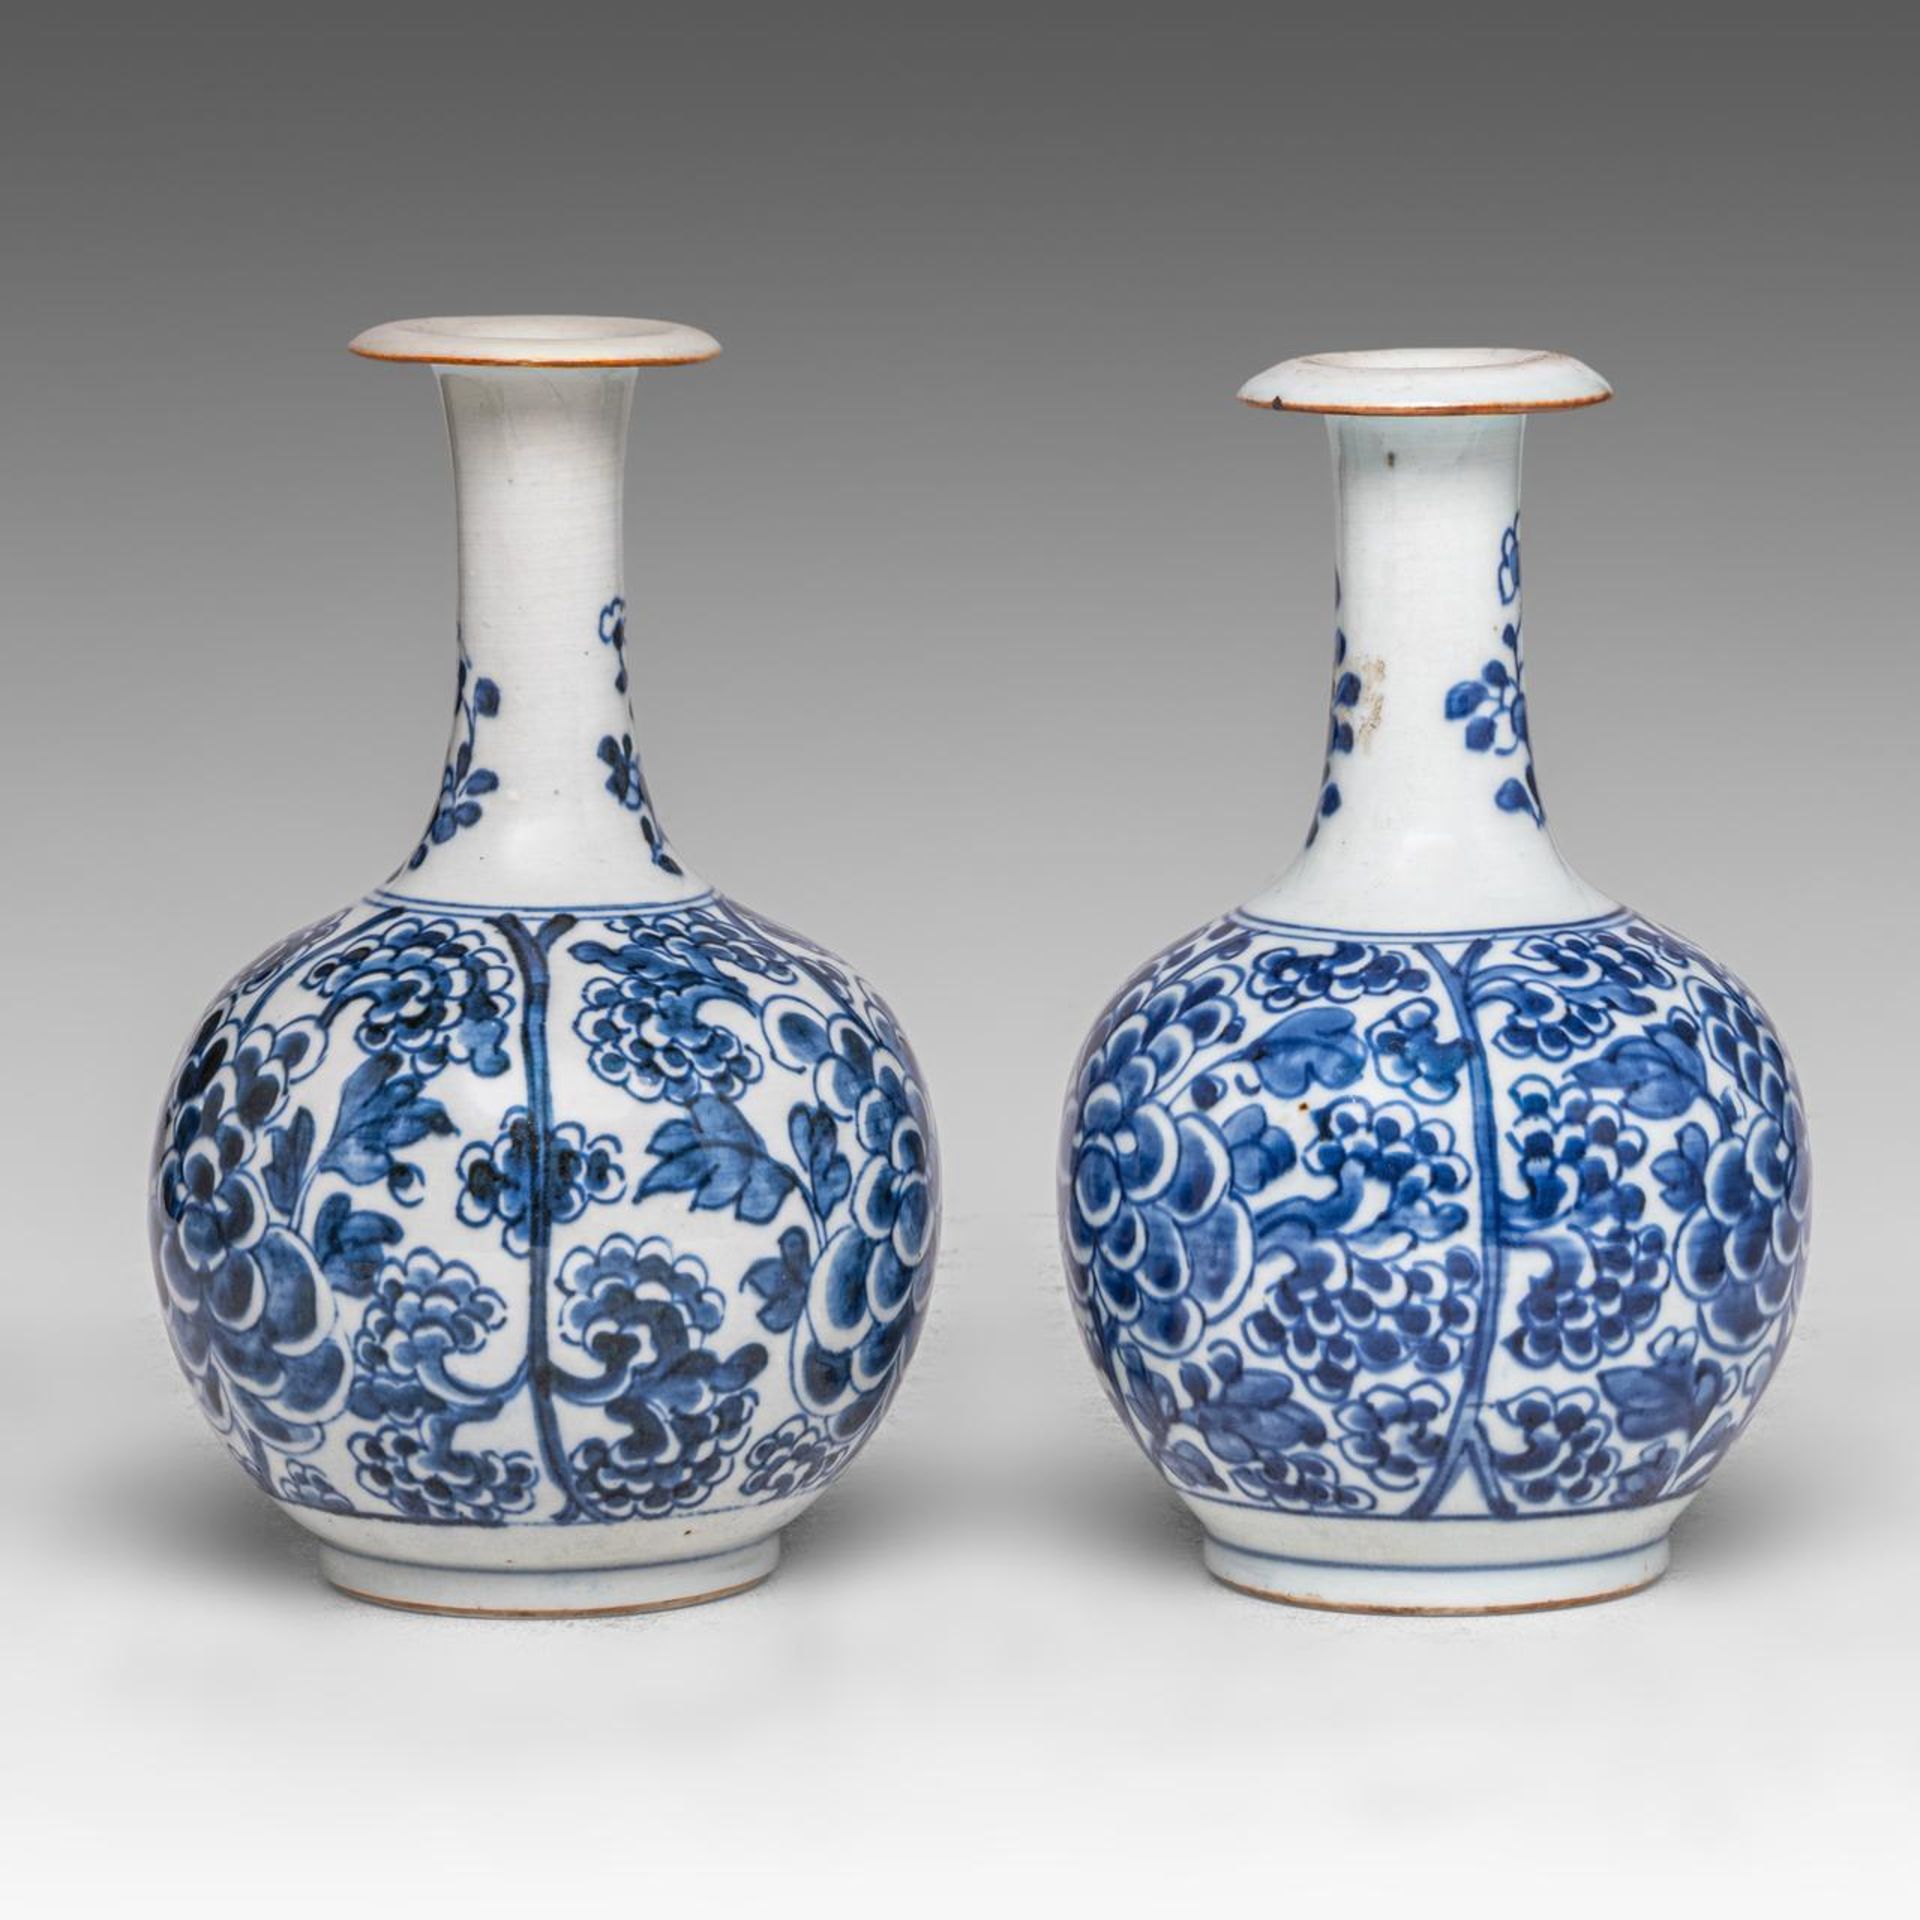 Two Chinese 'Peony scrolls' kendi jugs, Transitional/ Kangxi period, H 20 cm - Image 3 of 7